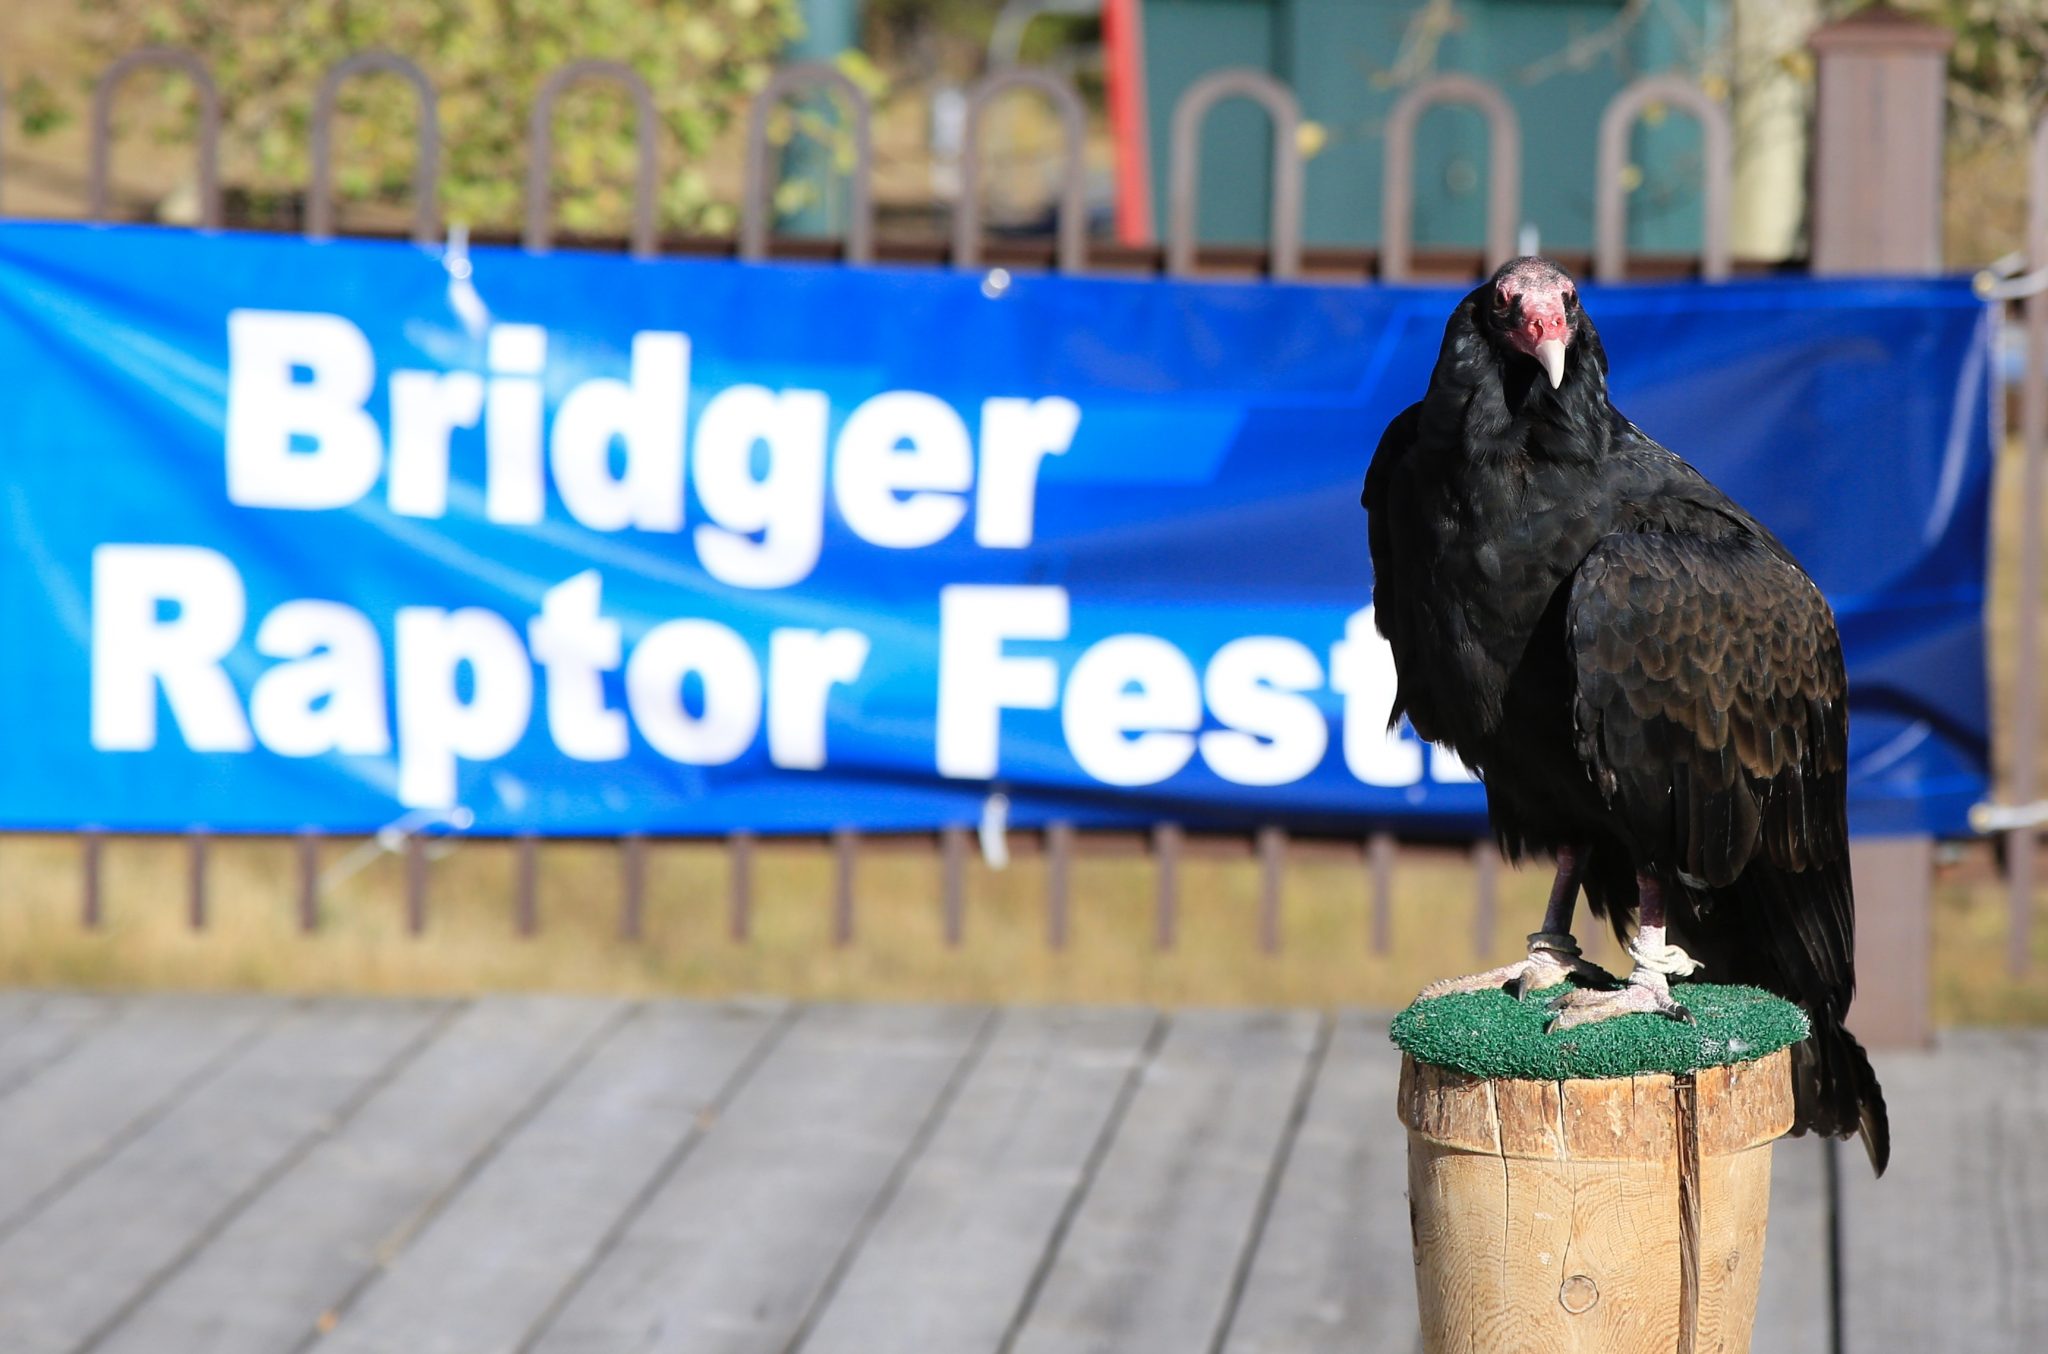 The Bridger Raptor Festival Bridger Raptor Fest